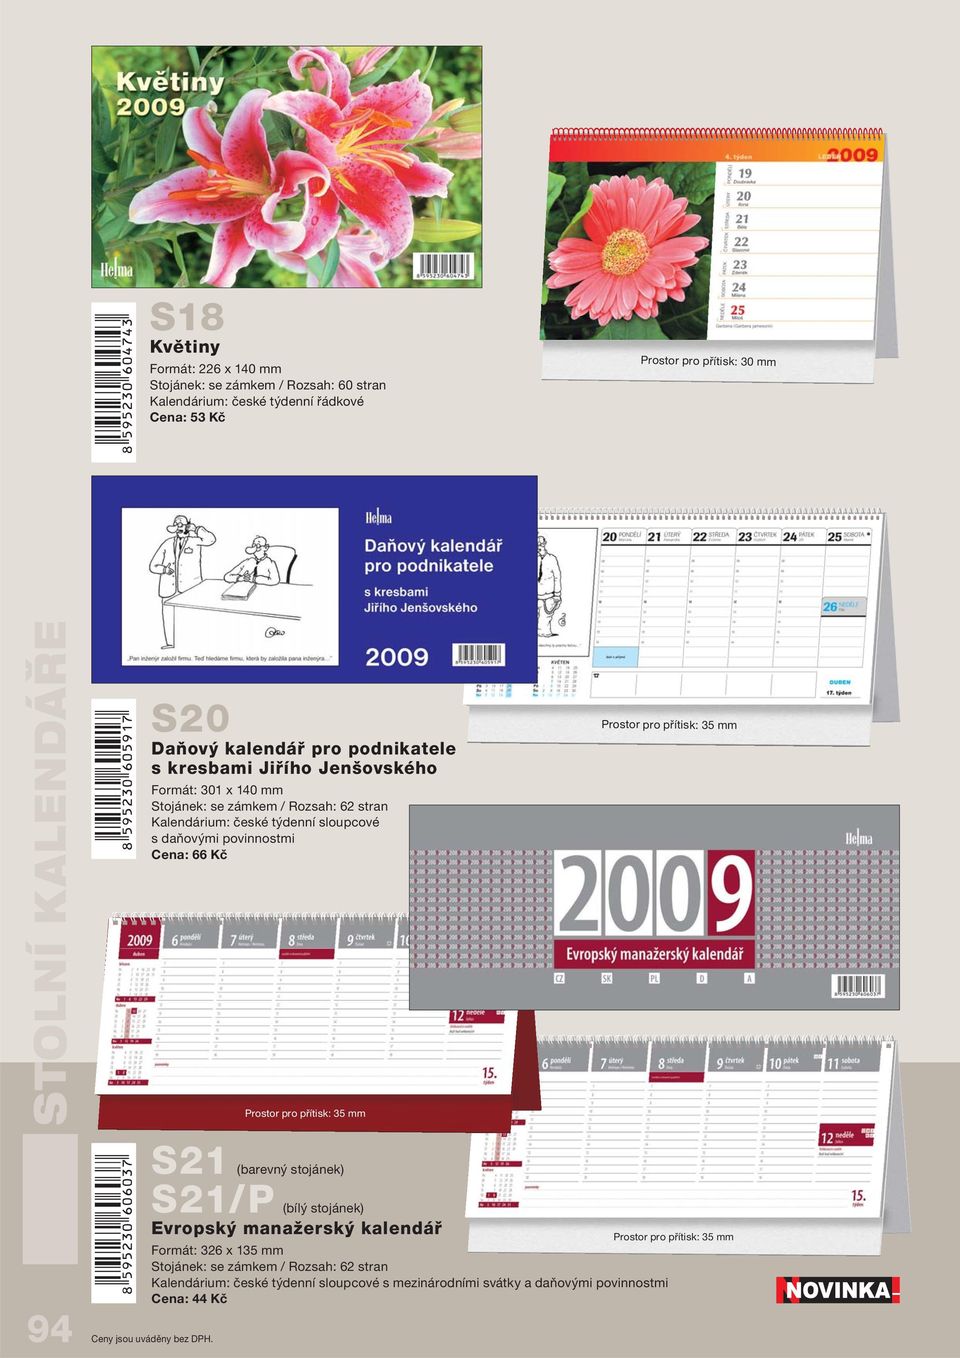 stojánek) S21/P (bílý stojánek) Evropský manažerský kalendář Formát: 326 x 135 mm Kalendárium: české